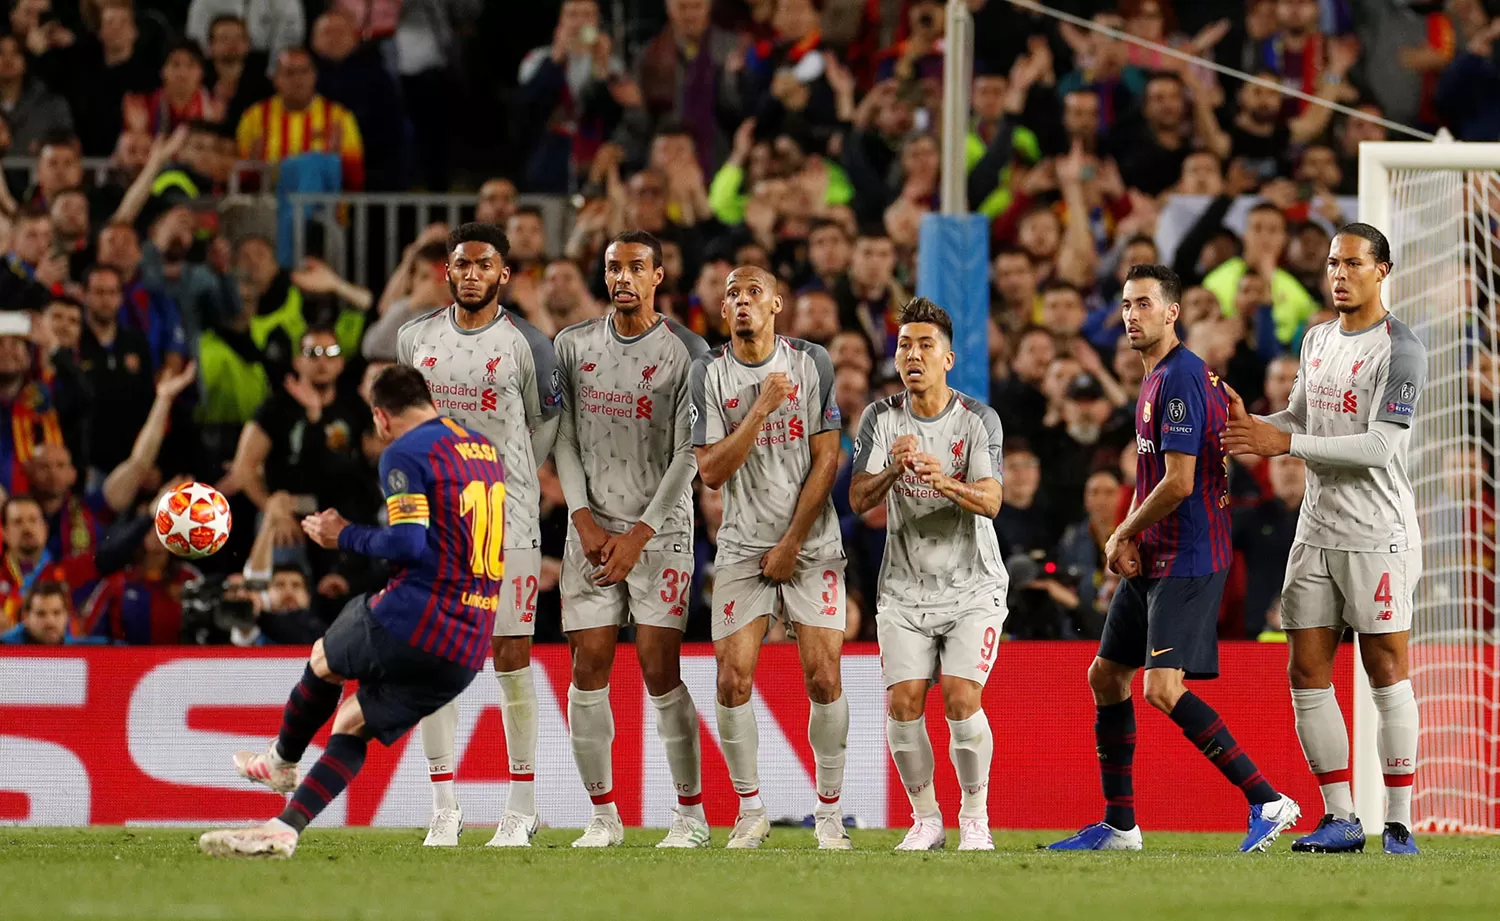 DESTINO DE RED. Messi ya sacó el zurdazo que ingresará en el ángulo para marcar el 3 a 0 de Barcelona sobre Liverpool, en la ida de la semifinal de la Liga de Campeones. La revancha se jugará el martes.